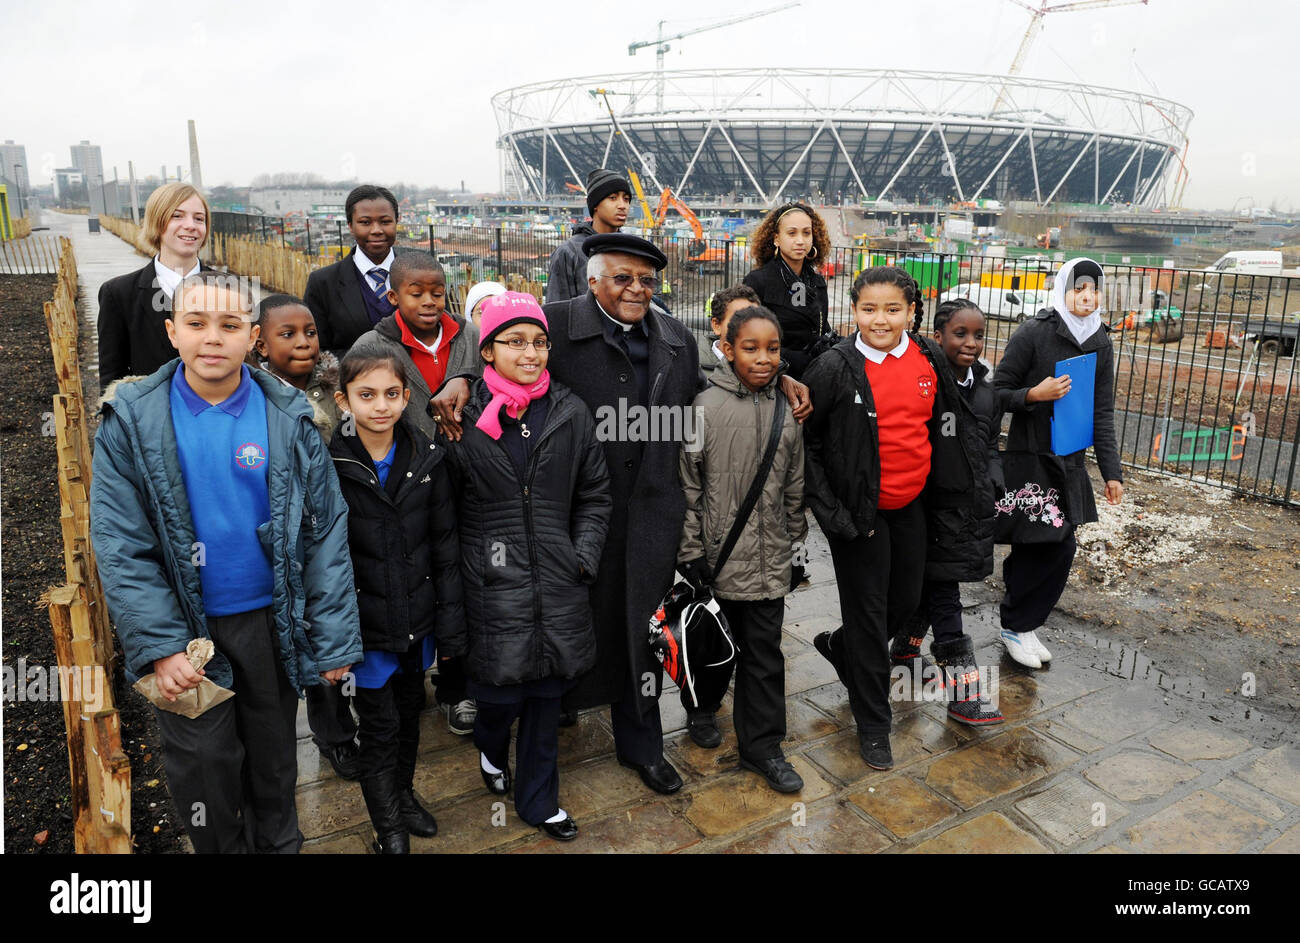 L'archevêque Desmond Tutu avec des enfants et des élèves de l'est de Londres sur le Greenway, devant le stade olympique de 2012 à Stratford, dans l'est de Londres. Banque D'Images